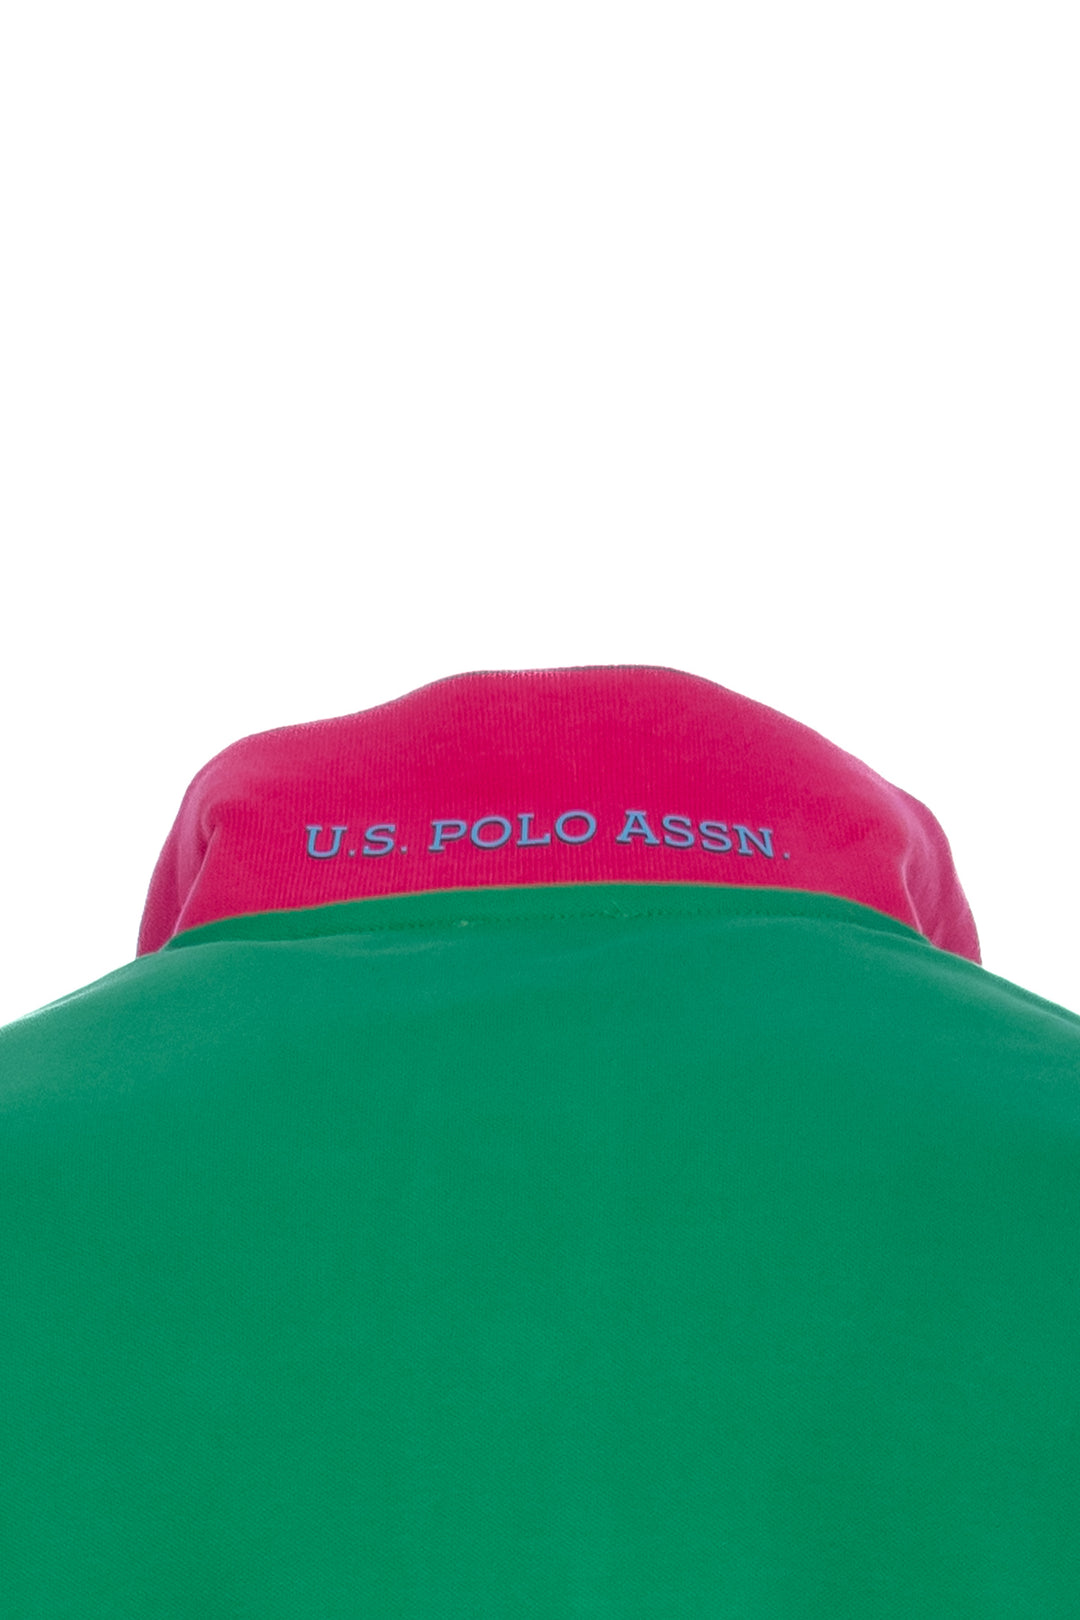 U.S. POLO ASSN. Polo verde in cotone stretch con logo ricamato e maniche multicolor - Mancinelli 1954